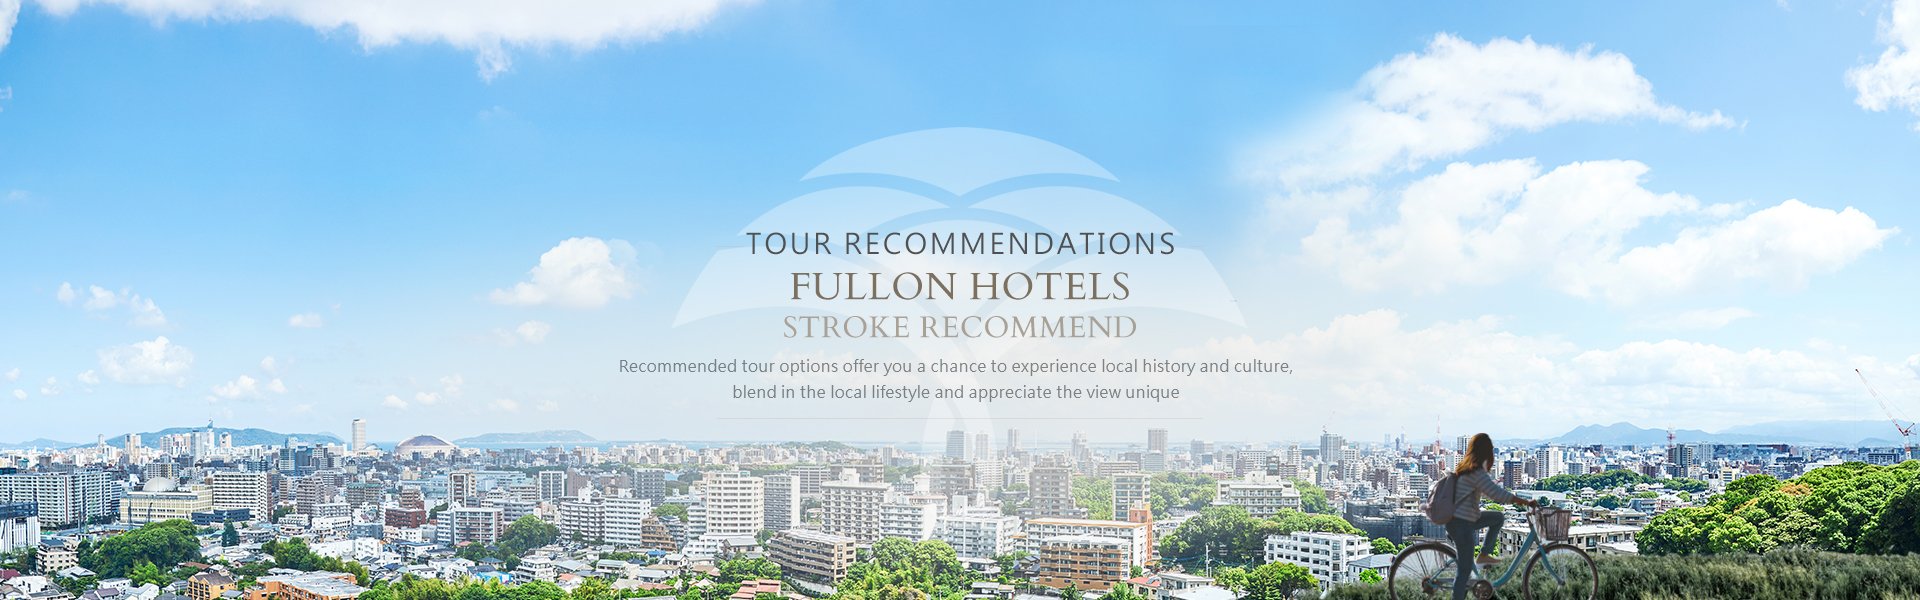 Tour Recommendations